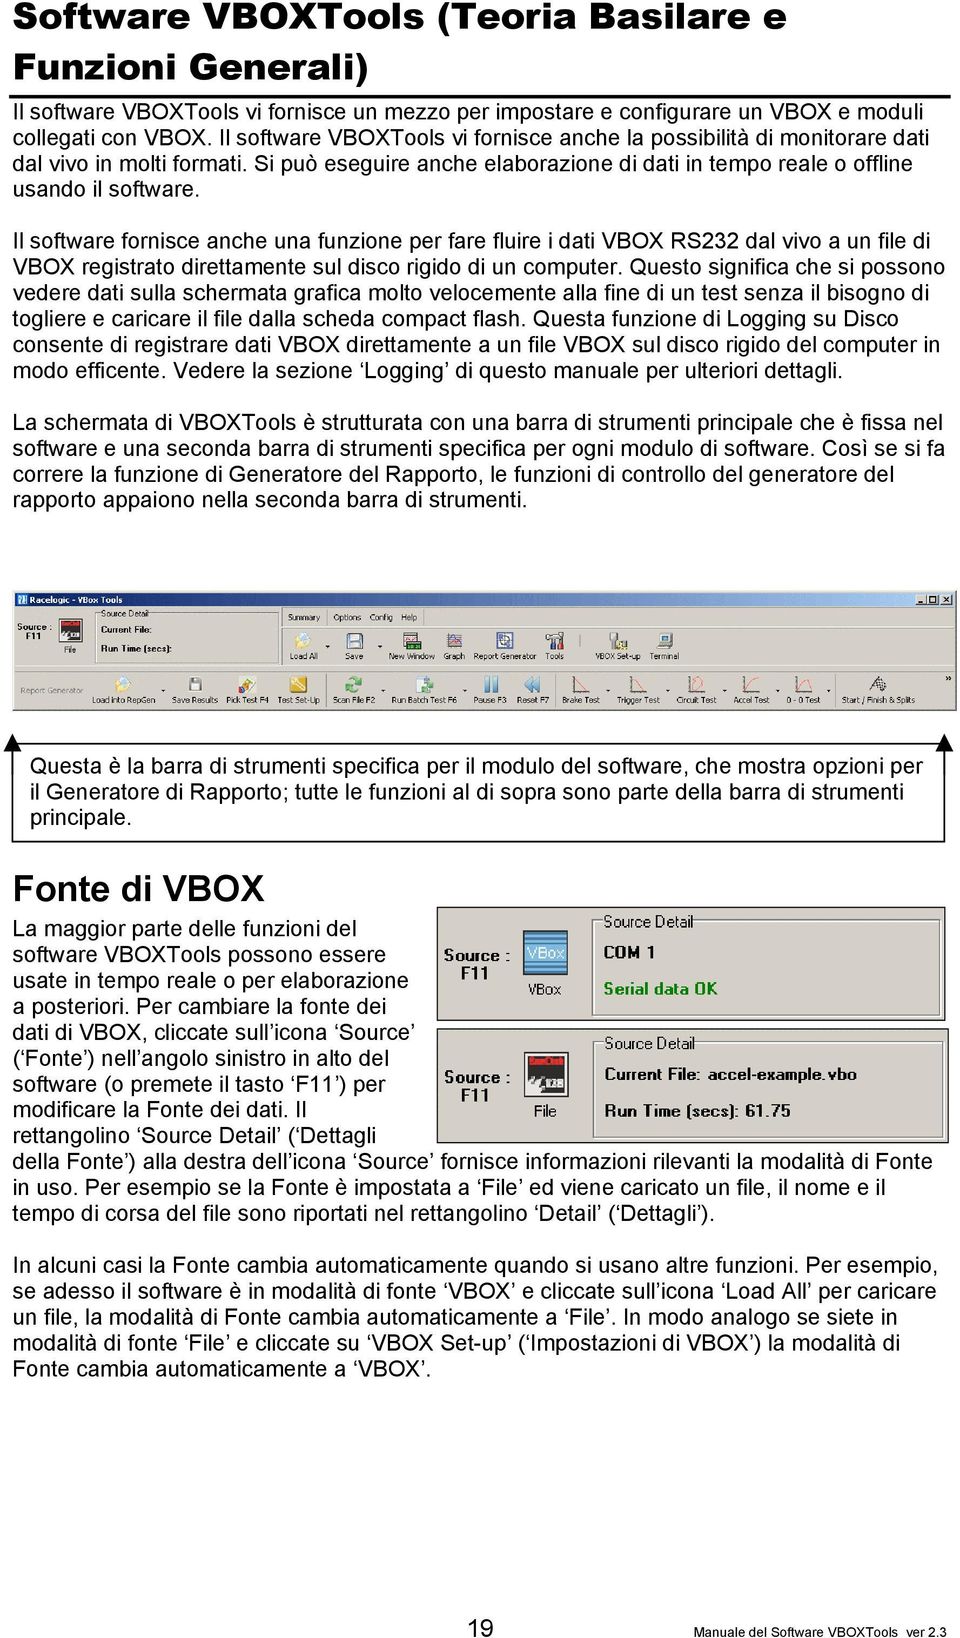 Il software fornisce anche una funzione per fare fluire i dati VBOX RS232 dal vivo a un file di VBOX registrato direttamente sul disco rigido di un computer.